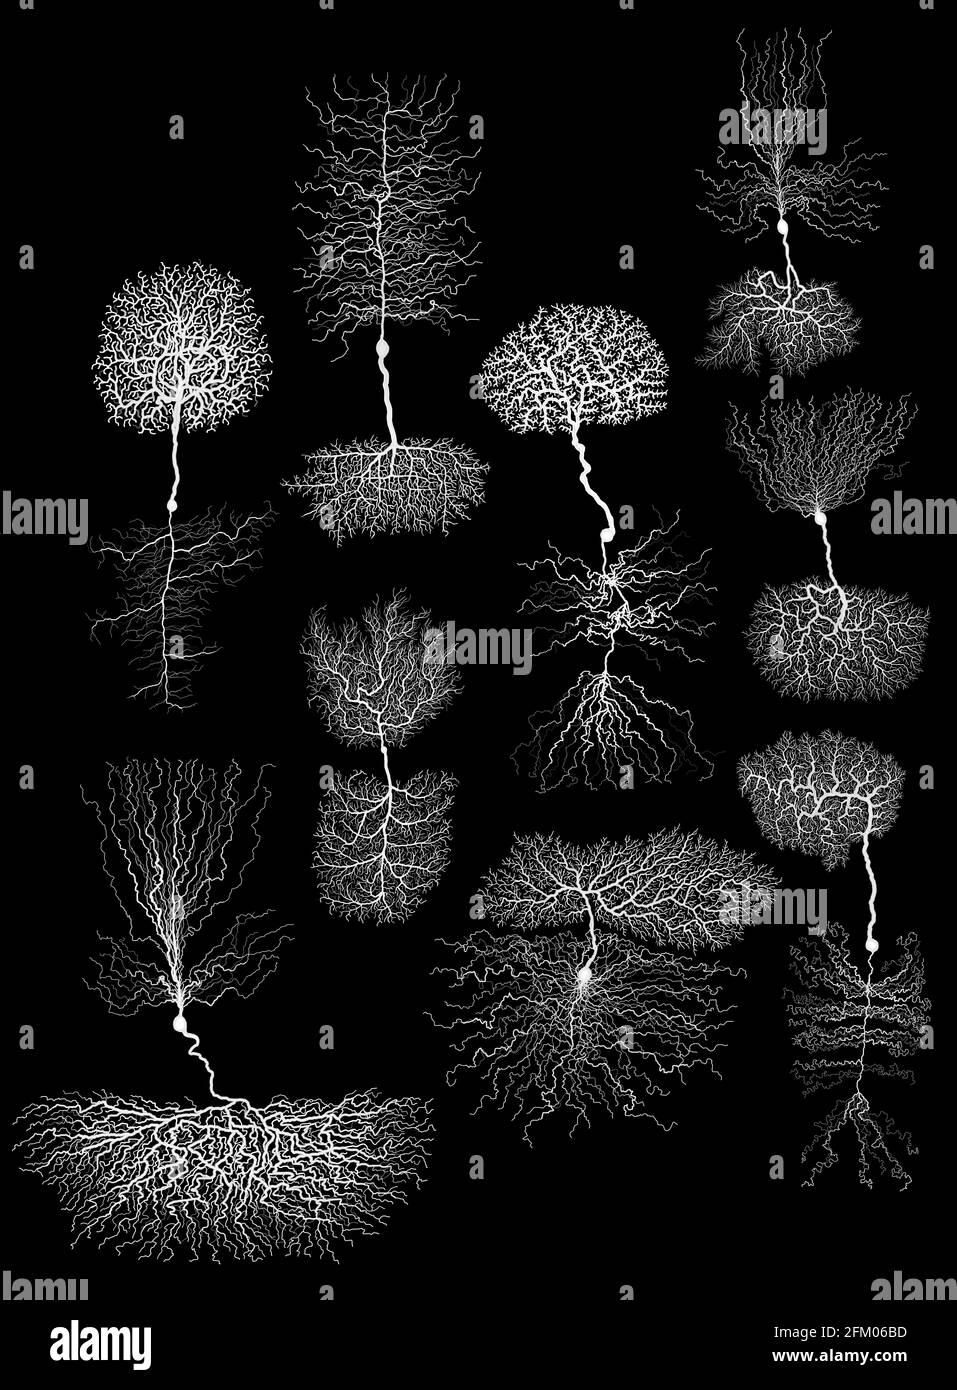 neurone biologico di sviluppo umano con cellula su nero Foto Stock